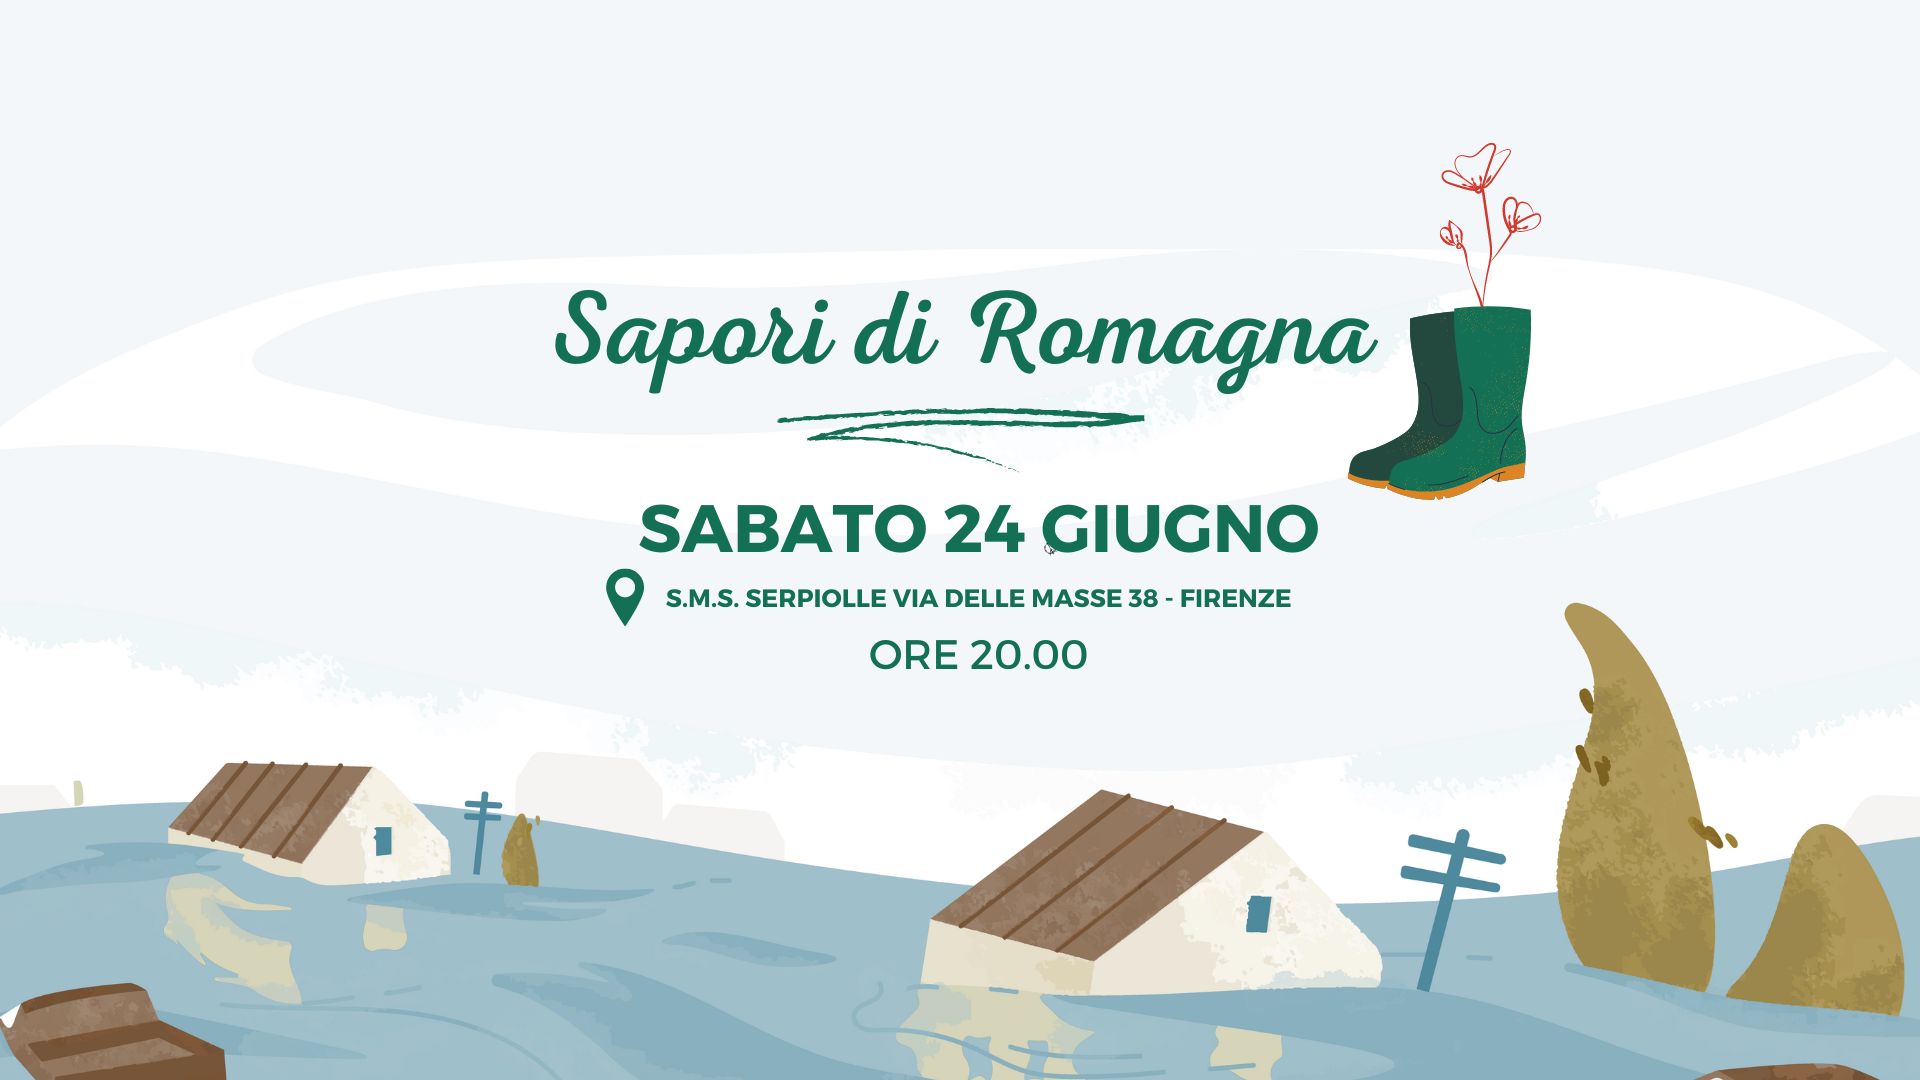 Sabato 24 giugno ore 20.000 presso la SMS Serpiolle vi aspettiamo ad una cena di solidarietà per sostenere le associazioni colpite dall'alluvione in Emilia Romagna.